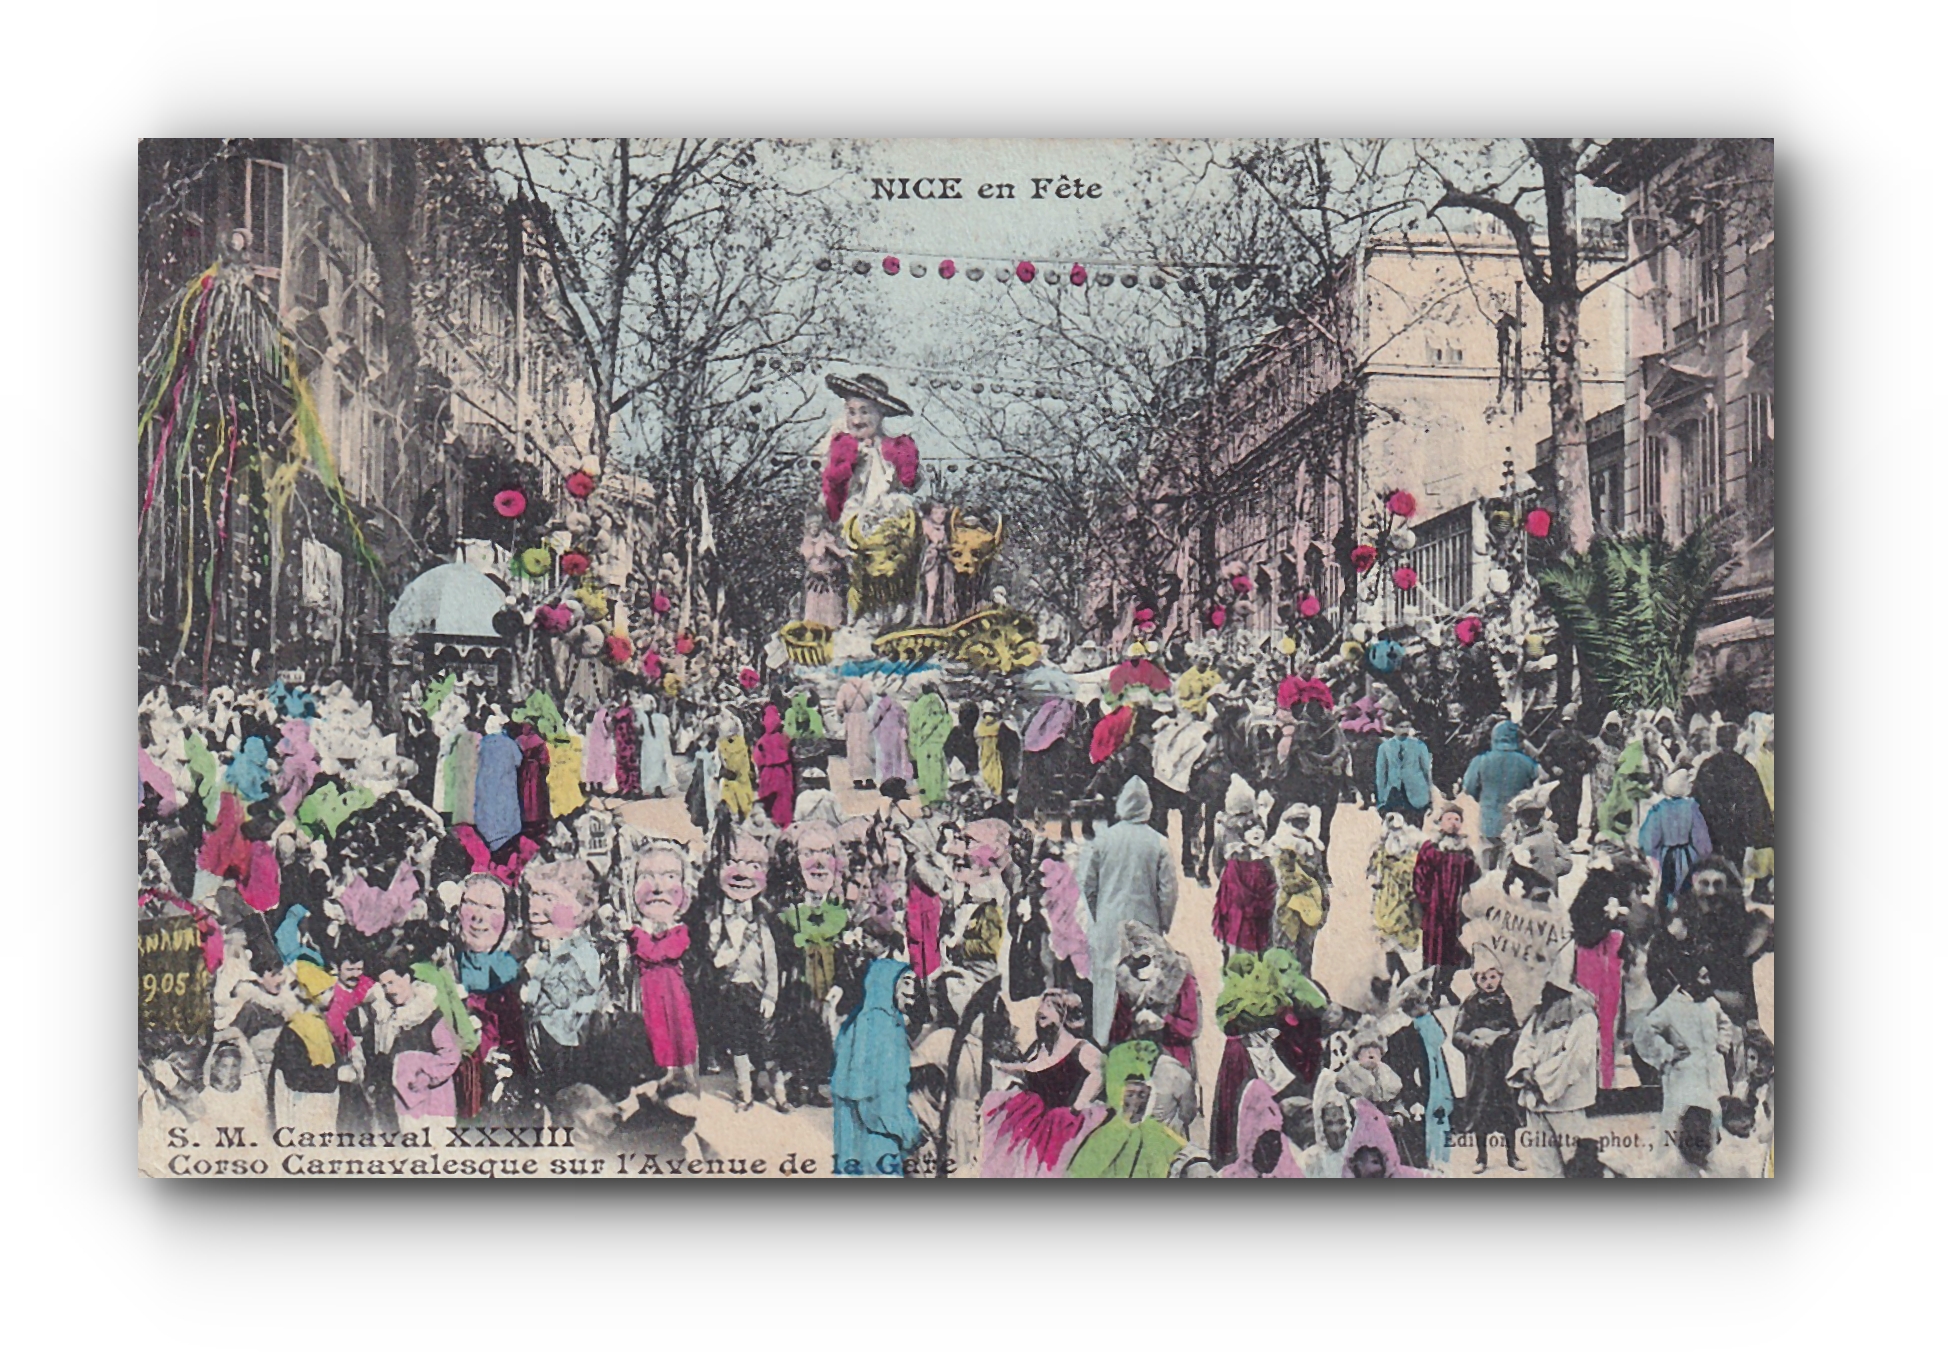 Corso Carnavalesque sur l'Avenue de la Gare - NICE en Fête - 08.03.1905 -